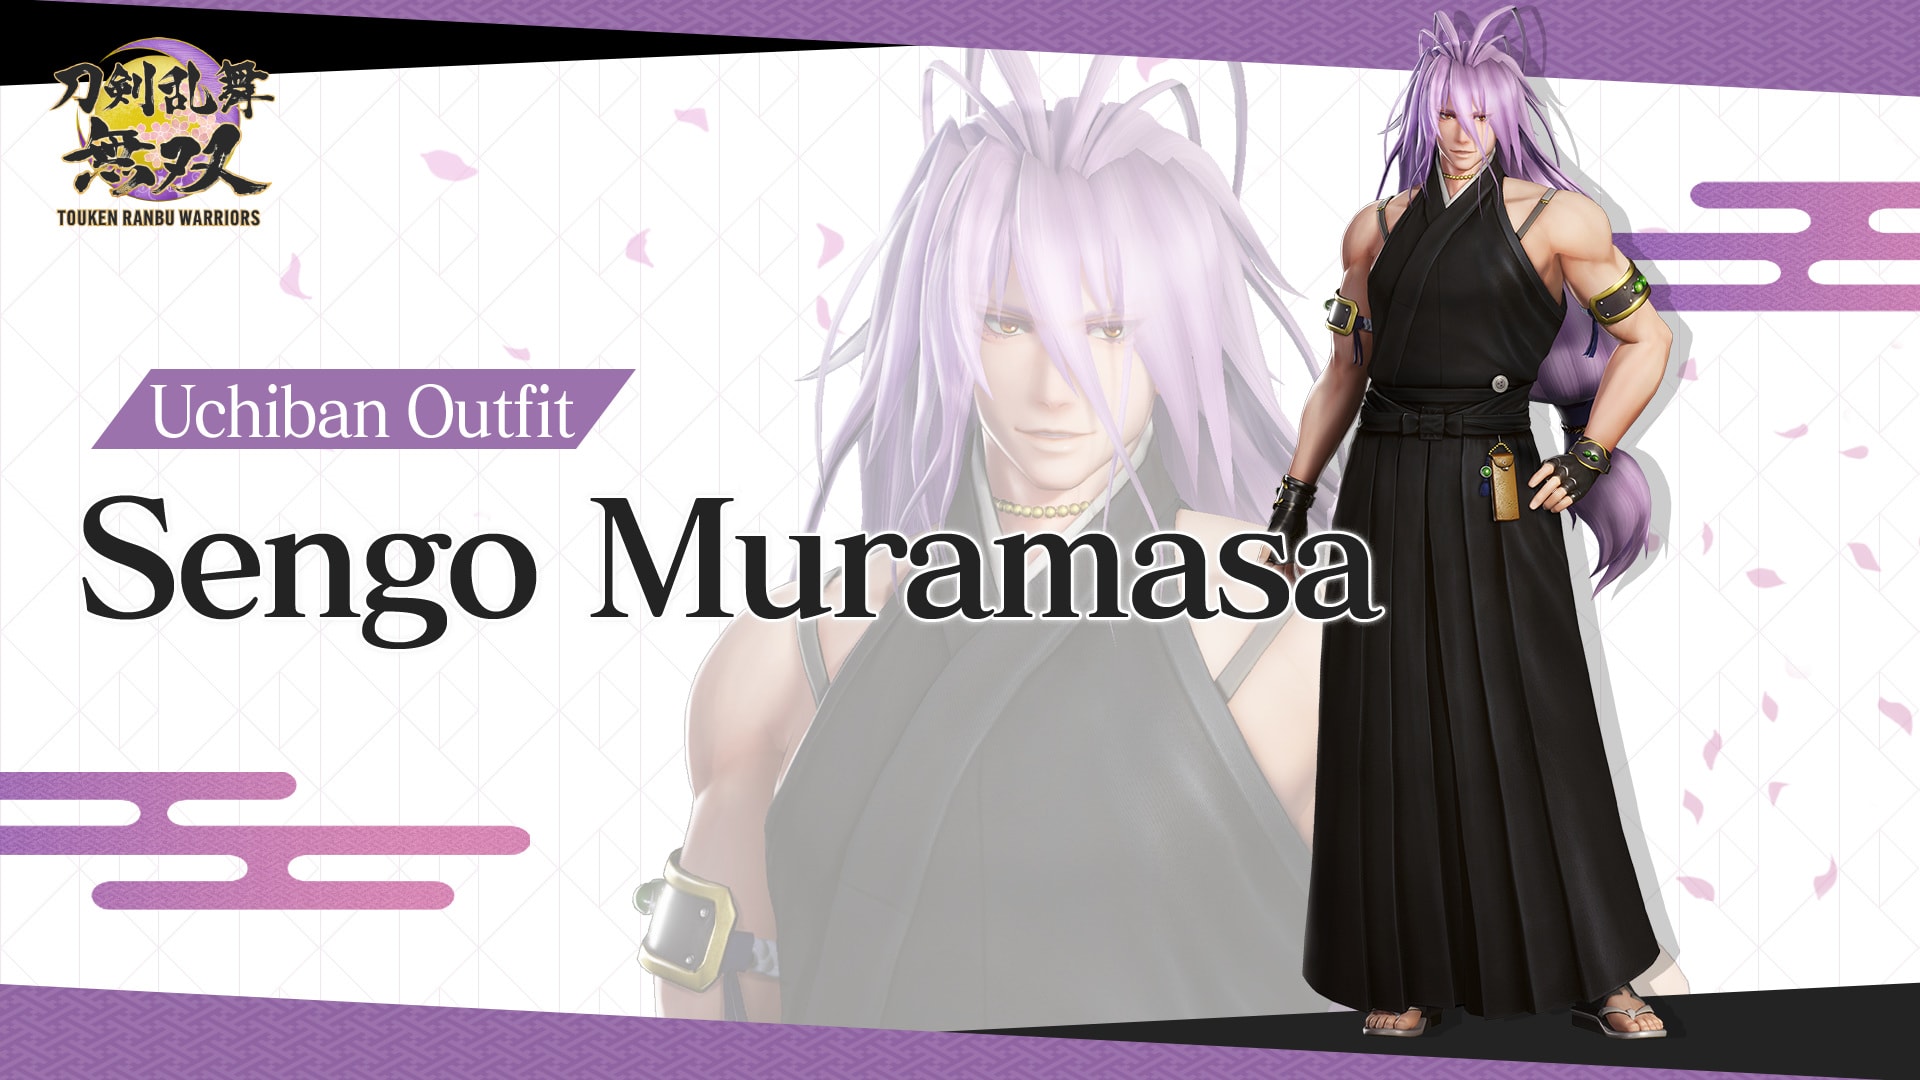 Uchiban Outfit "Sengo Muramasa" 1